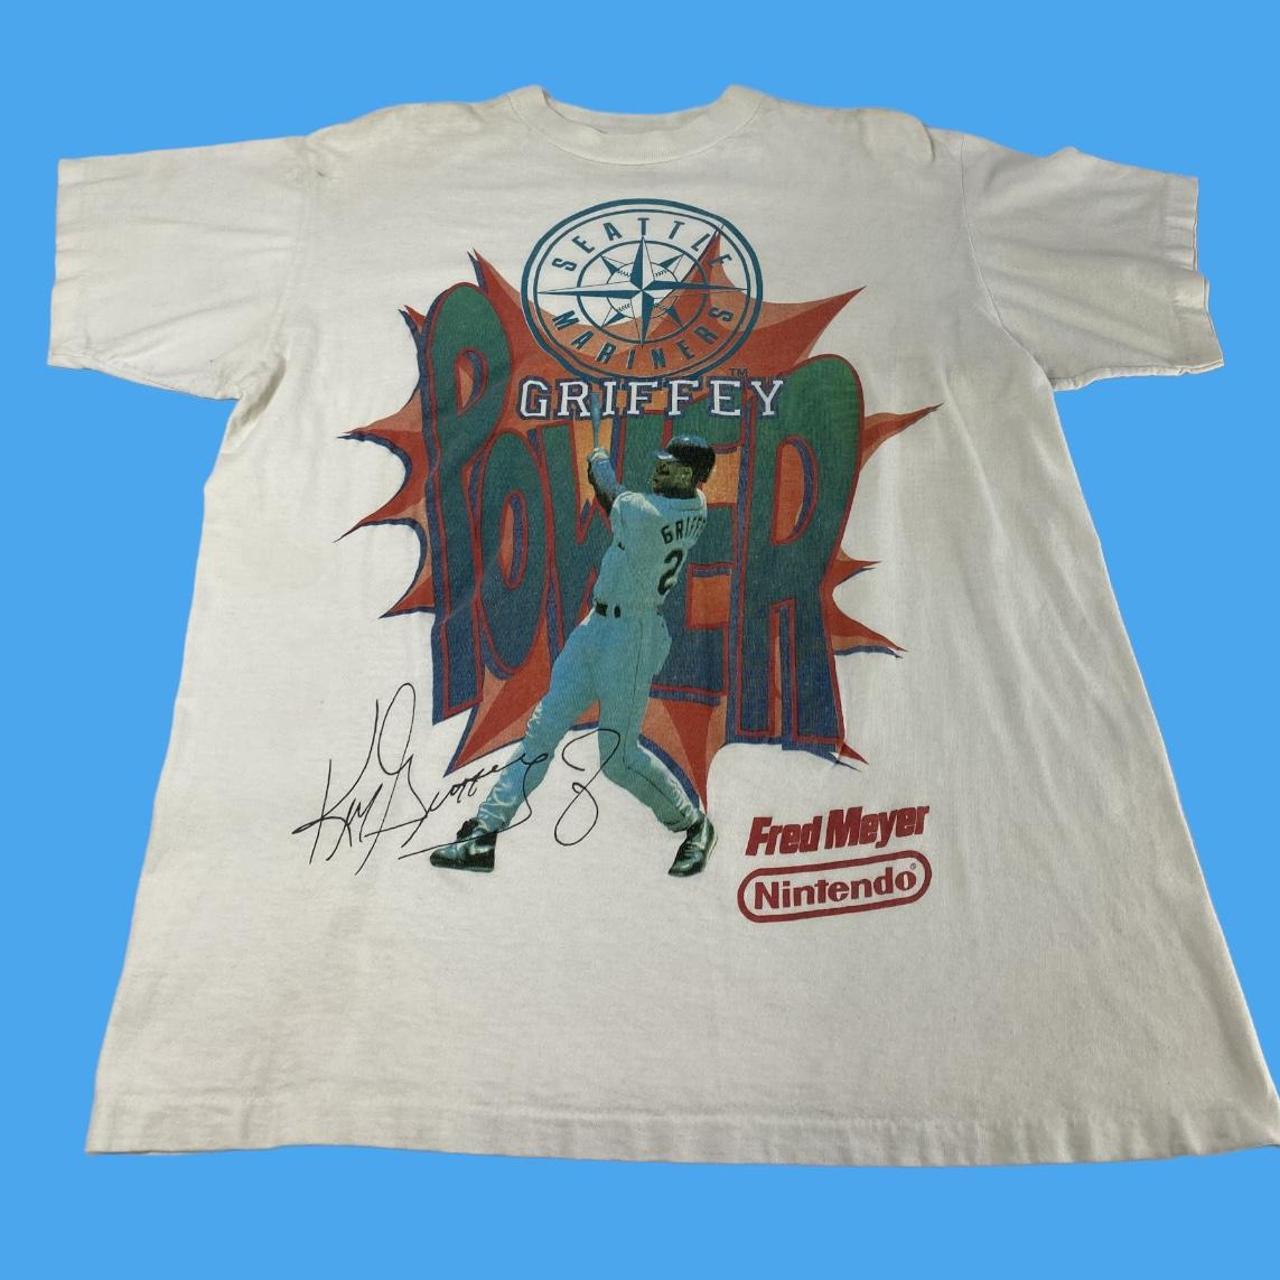 Nike MLB Seattle Mariners (Ken Griffey Jr.) Men's T-Shirt